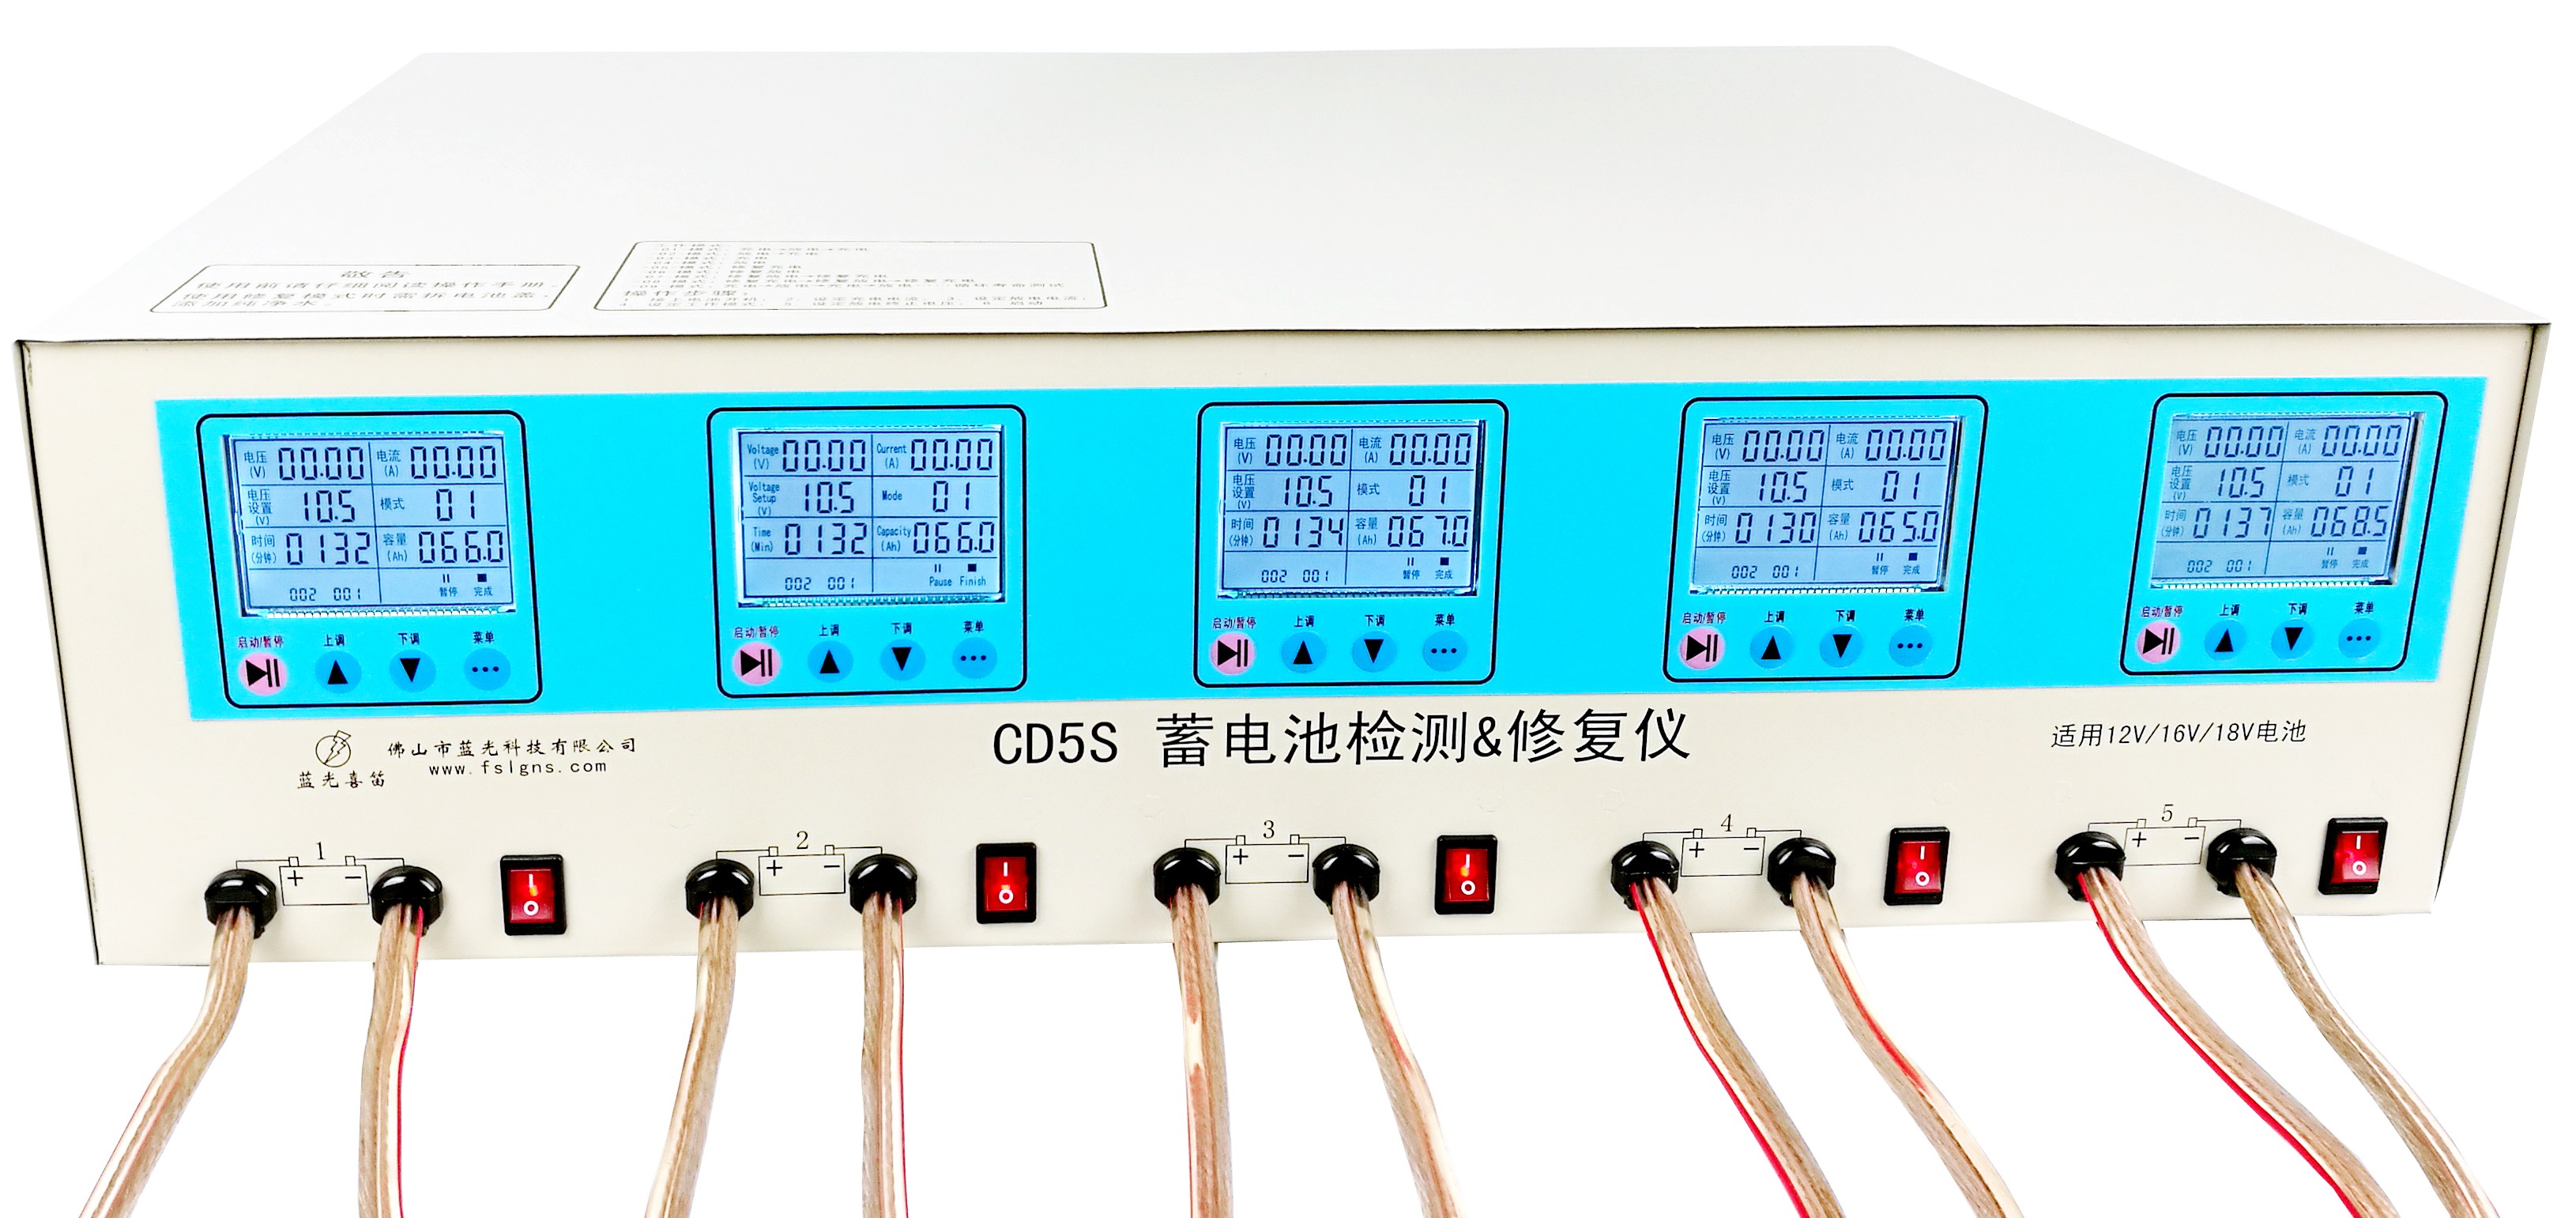 五路蓄电池修复仪CD5S